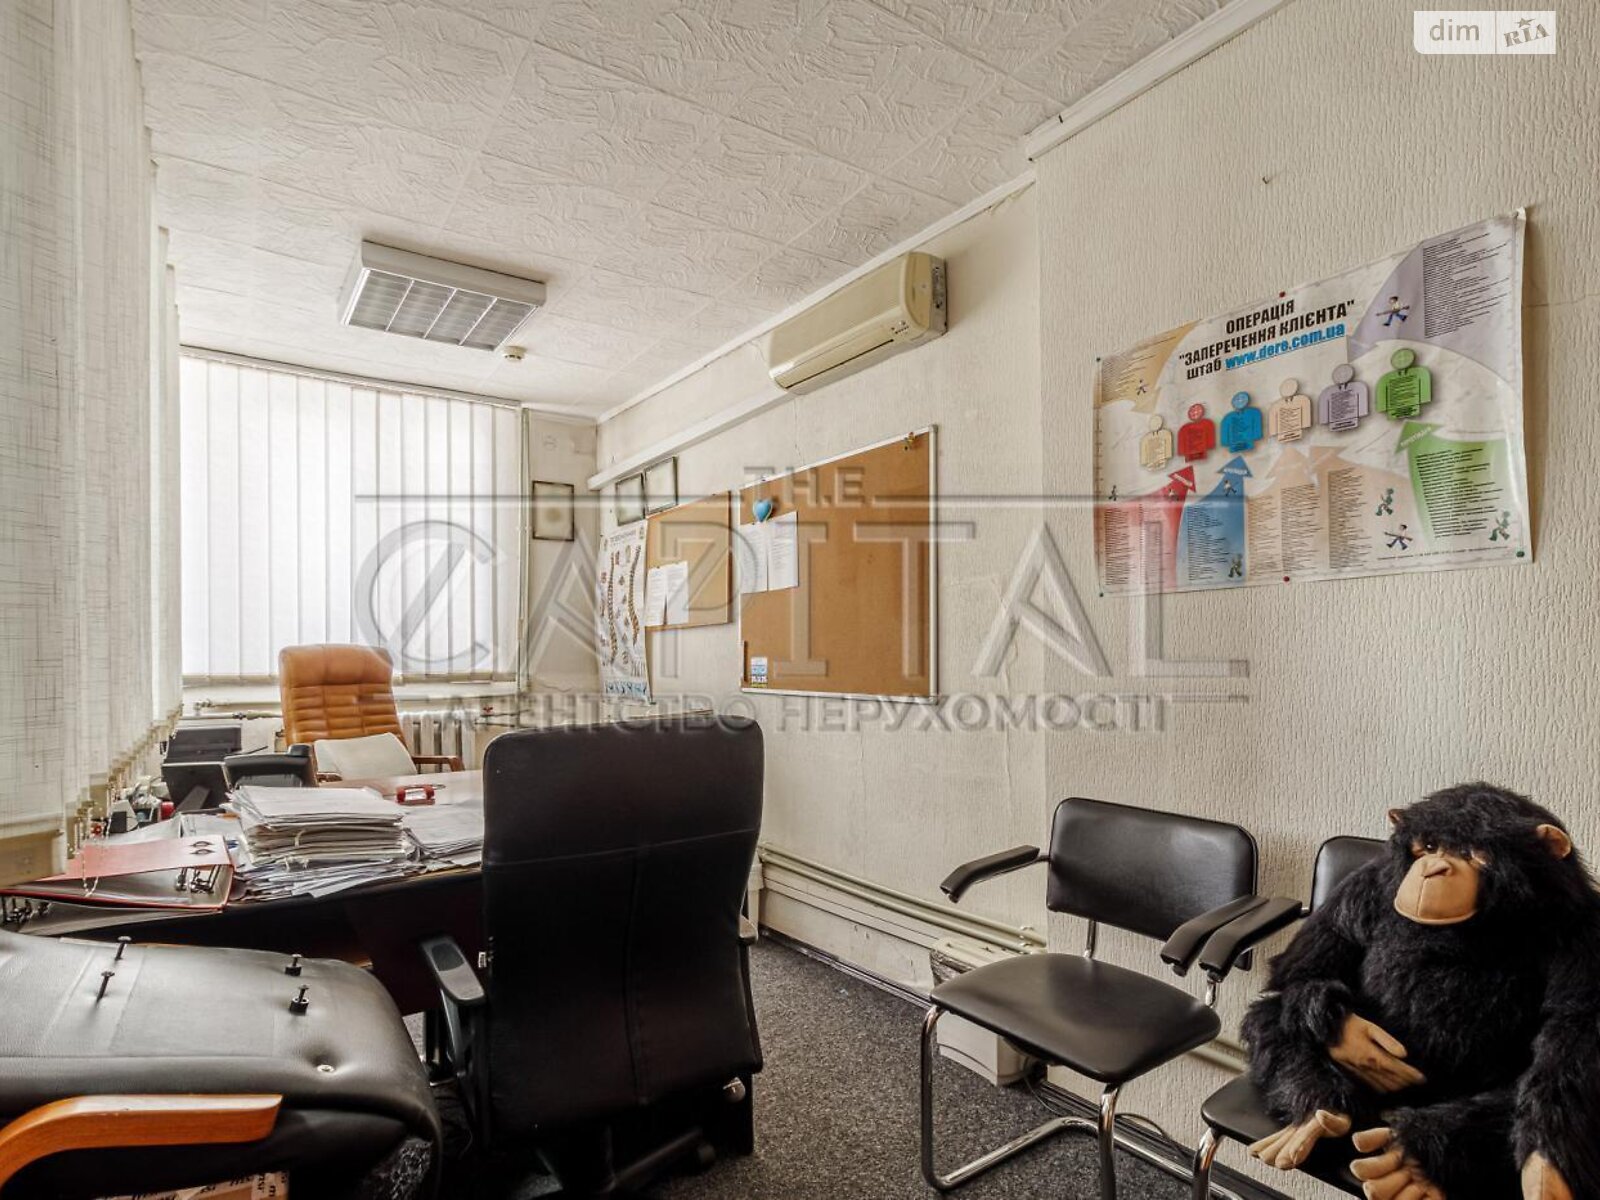 Оренда офісного приміщення в Києві, Тверський тупик 5, приміщень - 18, поверх - 2 фото 1